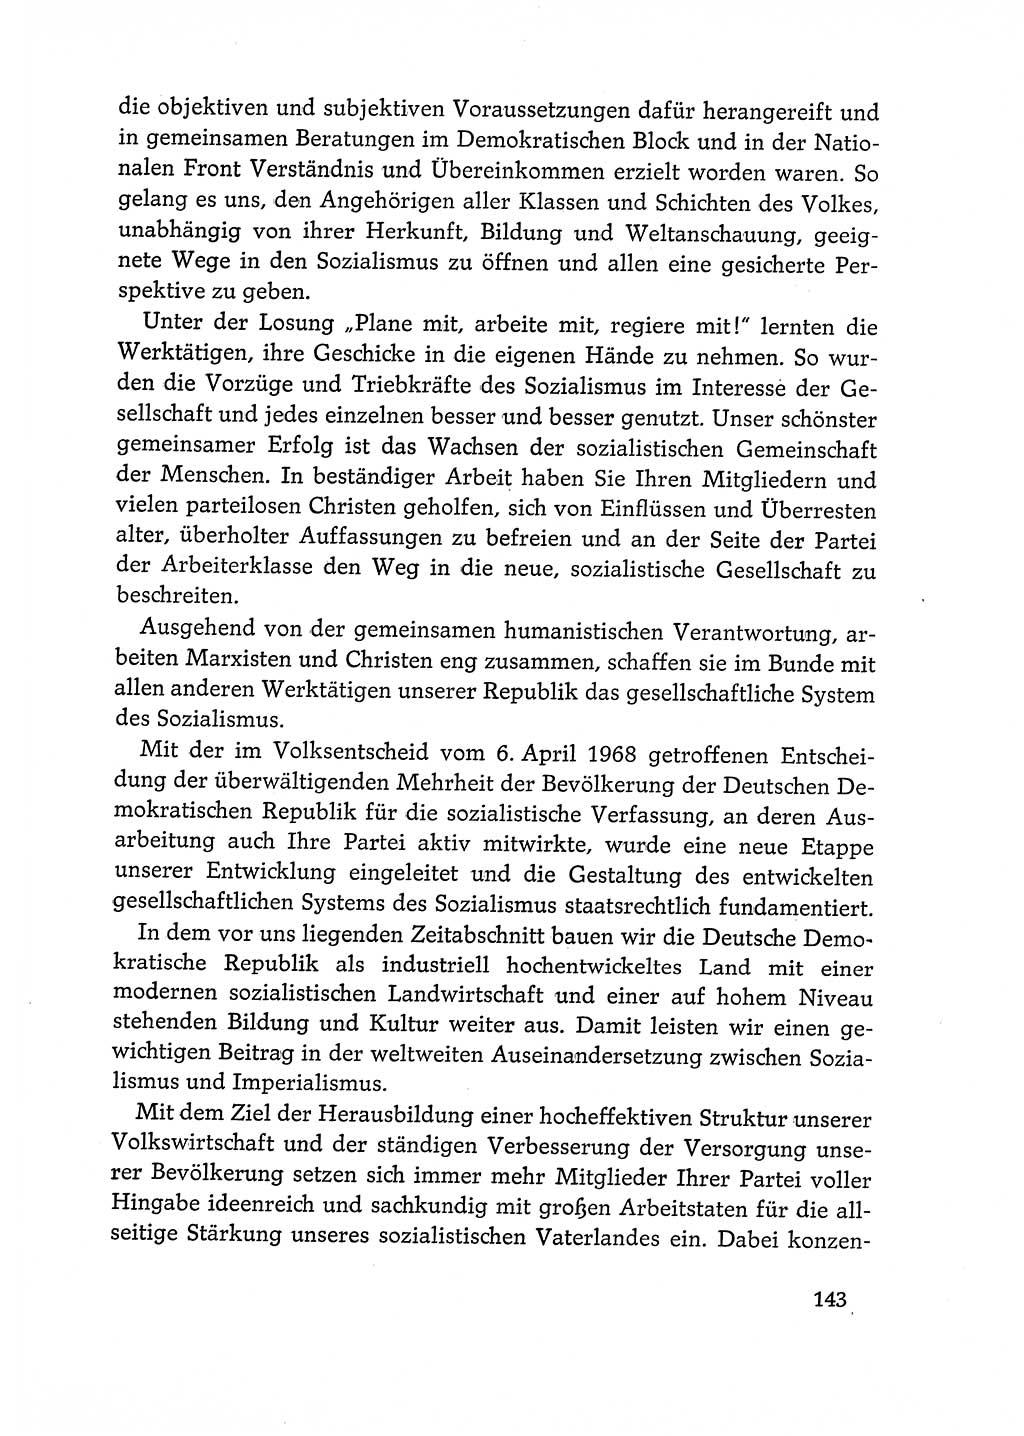 Dokumente der Sozialistischen Einheitspartei Deutschlands (SED) [Deutsche Demokratische Republik (DDR)] 1968-1969, Seite 143 (Dok. SED DDR 1968-1969, S. 143)